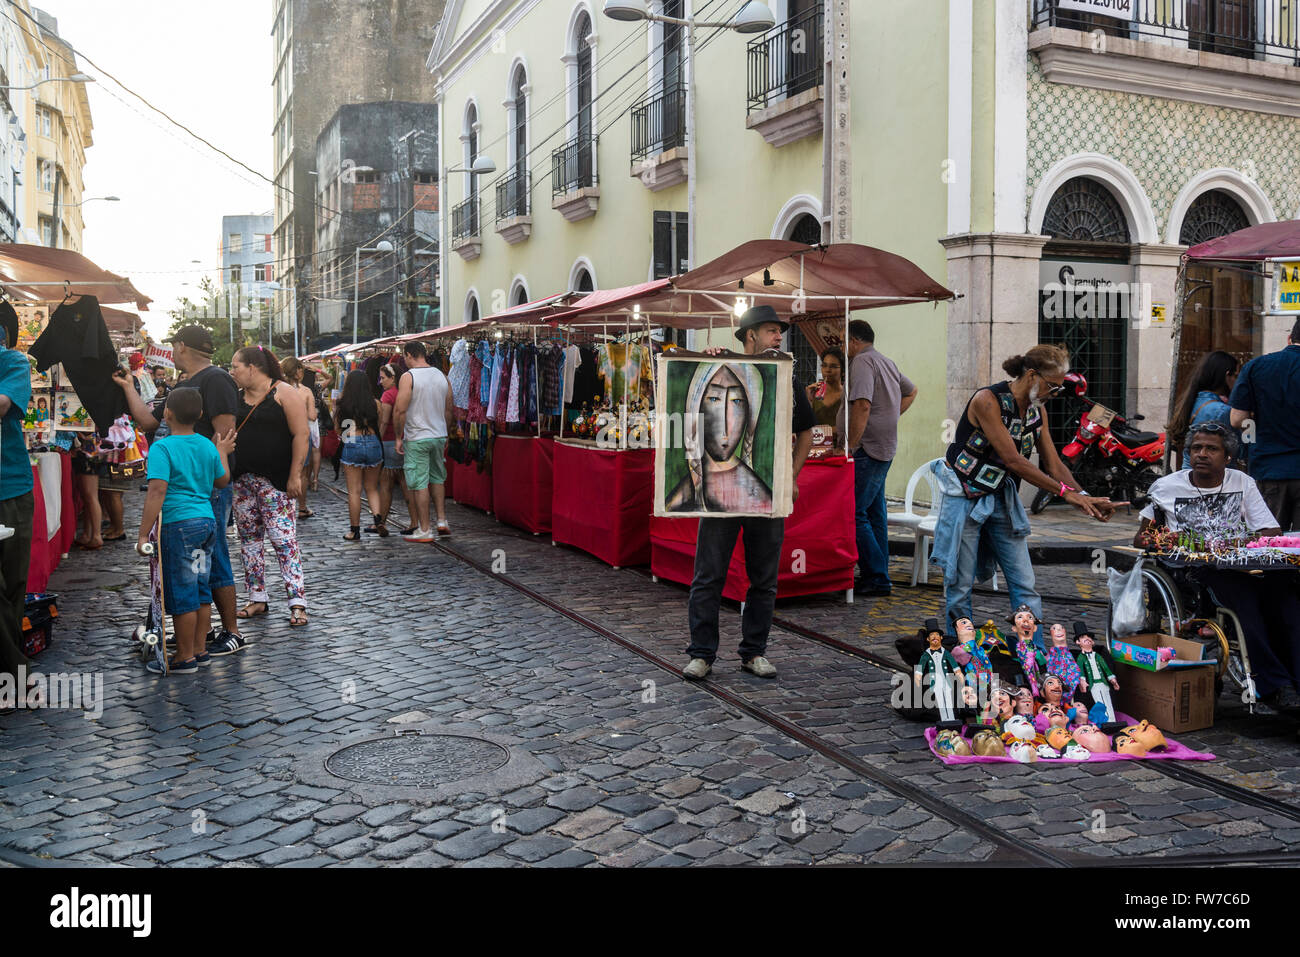 Sunday street market, Recife Antigo, Recife, Pernambuco, Brazil Stock Photo